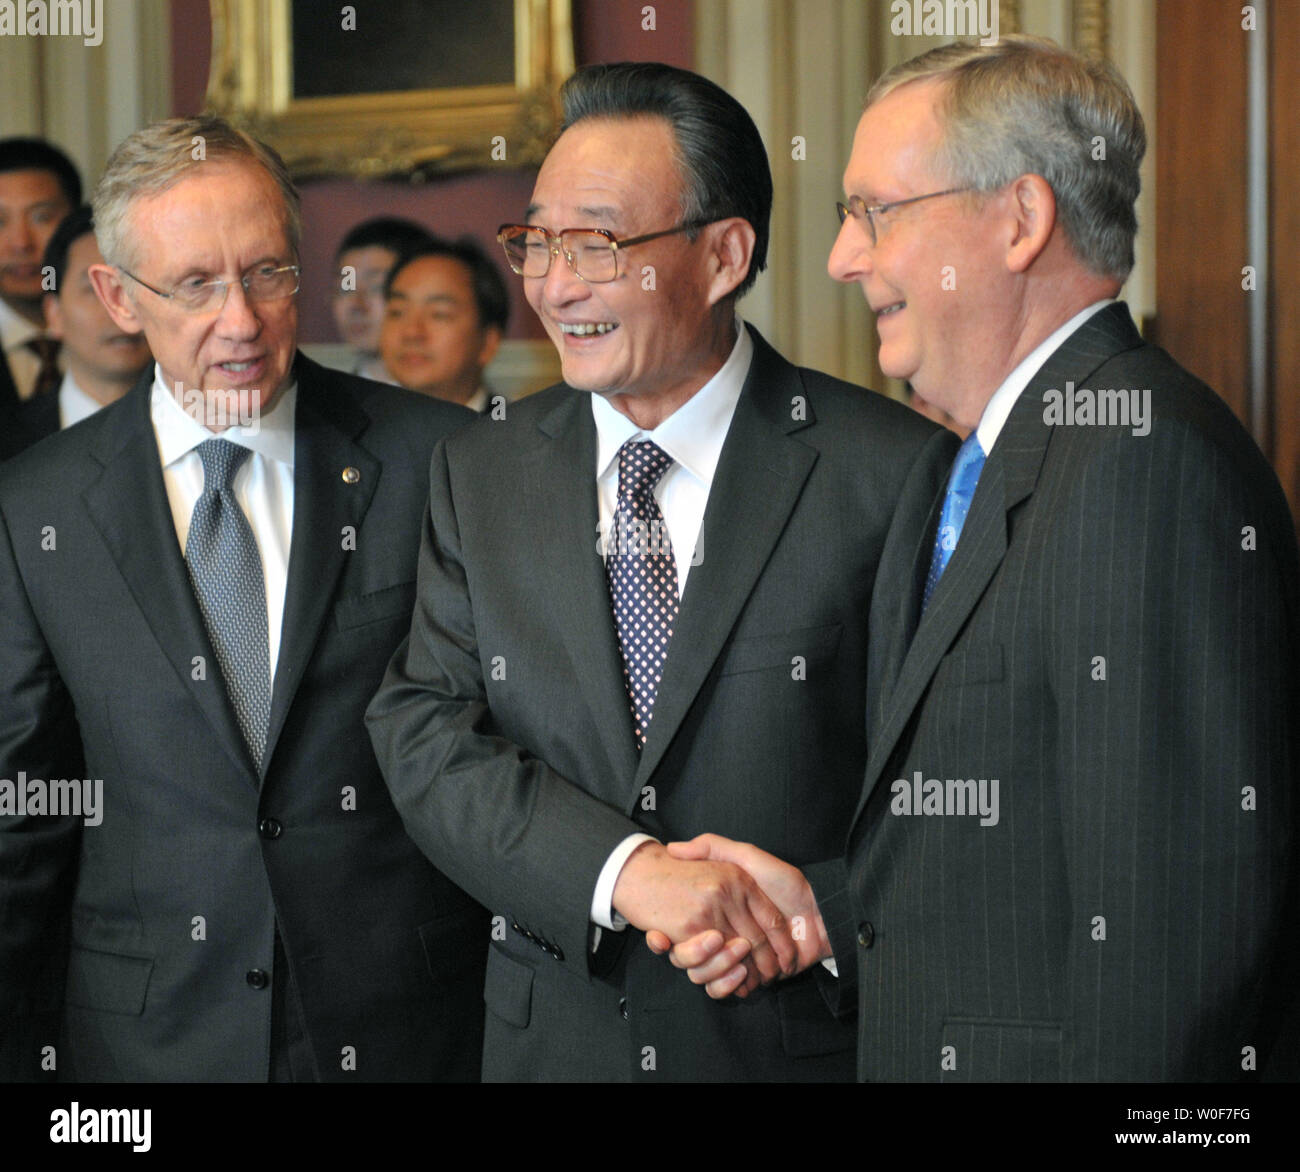 Vorsitzender des Ständigen Ausschusses des Nationalen Volkskongresses der Volksrepublik China Wu Bangguo (C) trifft sich mit Senat-minorität Führer Mitch McConnell (R-KY) (R) und der Mehrheitsführer im Senat, Harry Reid (D-NV) bei einem Treffen in Washington am 9. September 2009. UPI/Kevin Dietsch Stockfoto